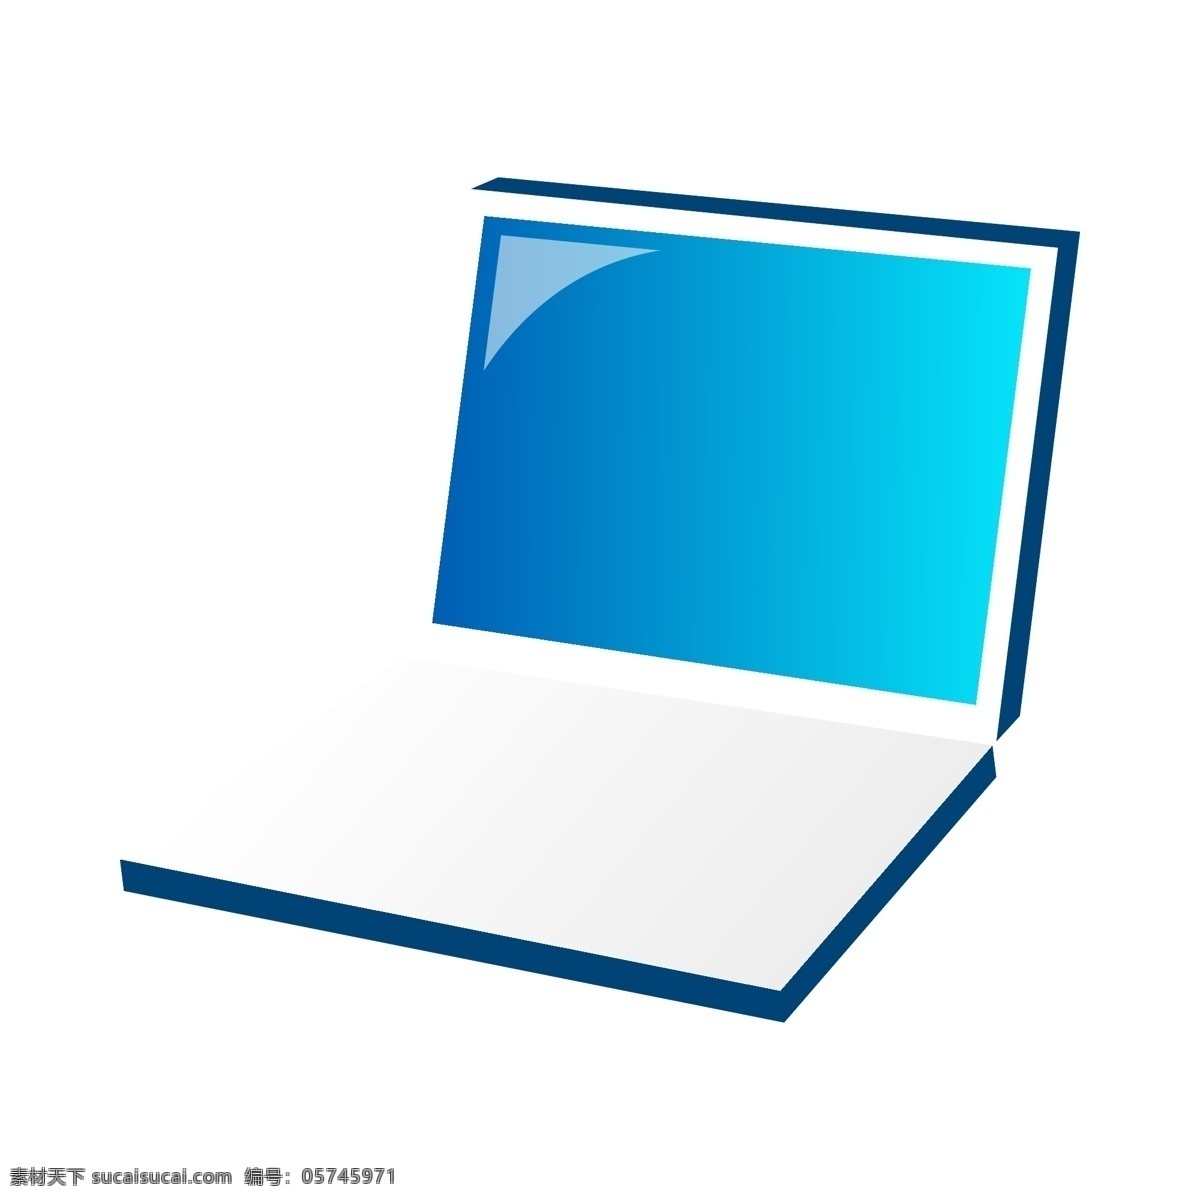 矢量 蓝色 笔记本 电脑 笔记本电脑 矢量笔记本 蓝色笔记本 矢量家电 蓝色家电 标志图标 公共标识标志